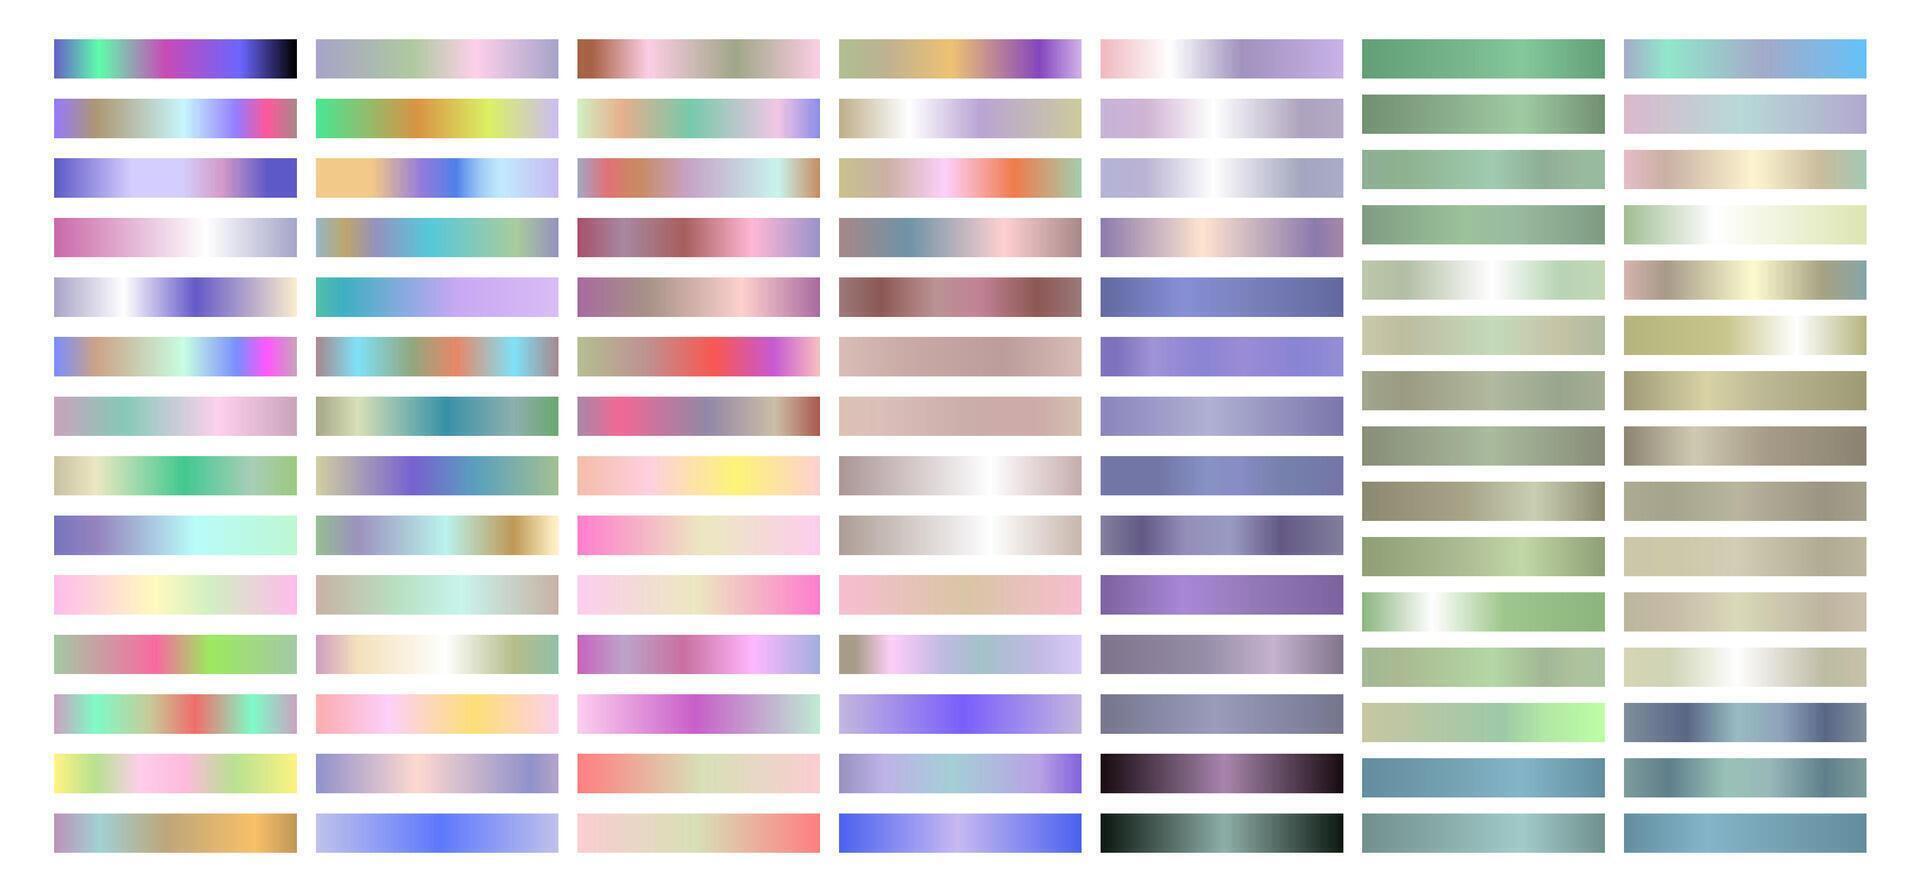 ligero vistoso metal degradado colección de cada color muestras vector